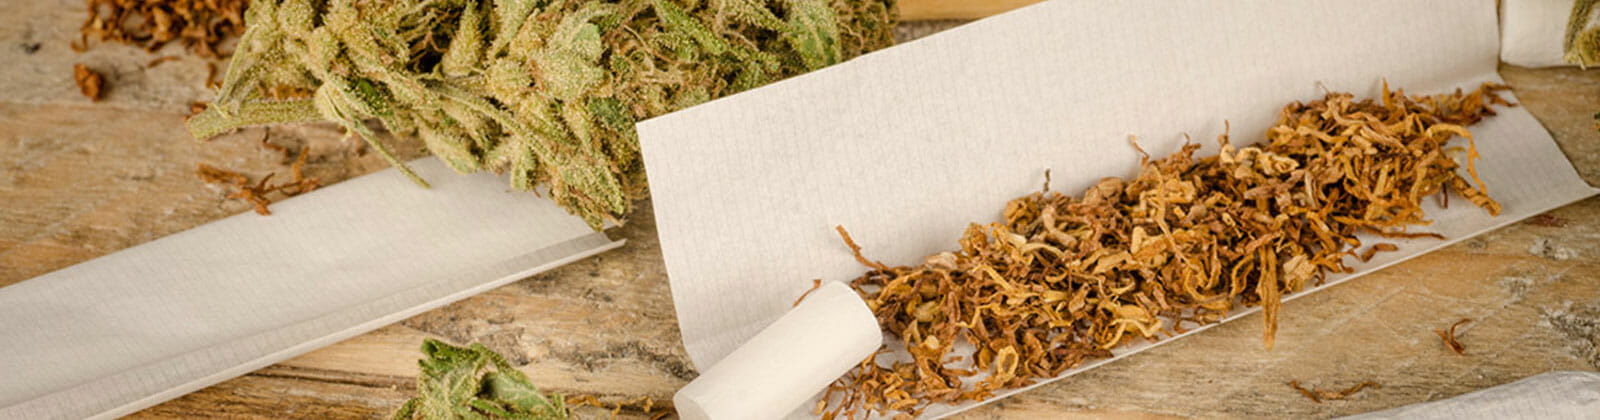 Cannabis-Tabak-Mischung: Warum du auf Tabak im Joint verzichten solltest